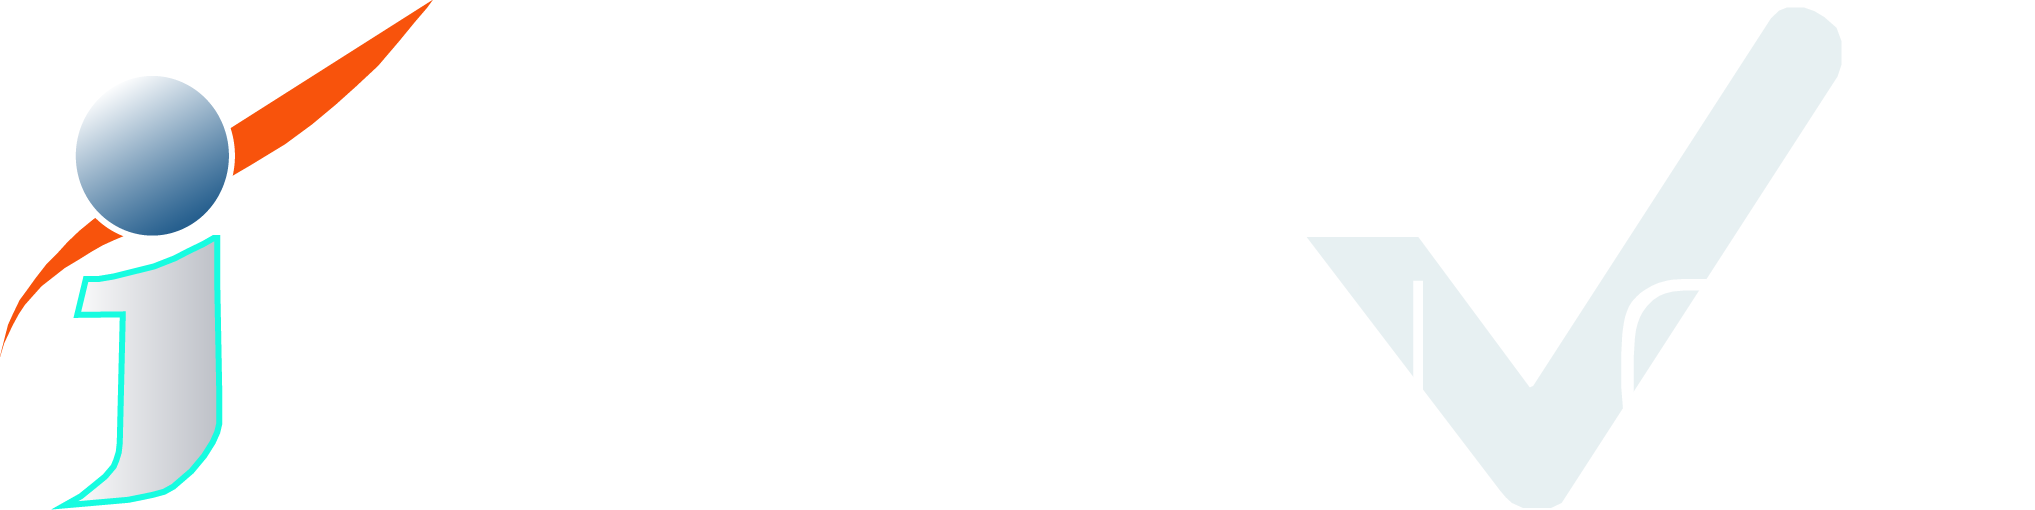 Innovative V logo